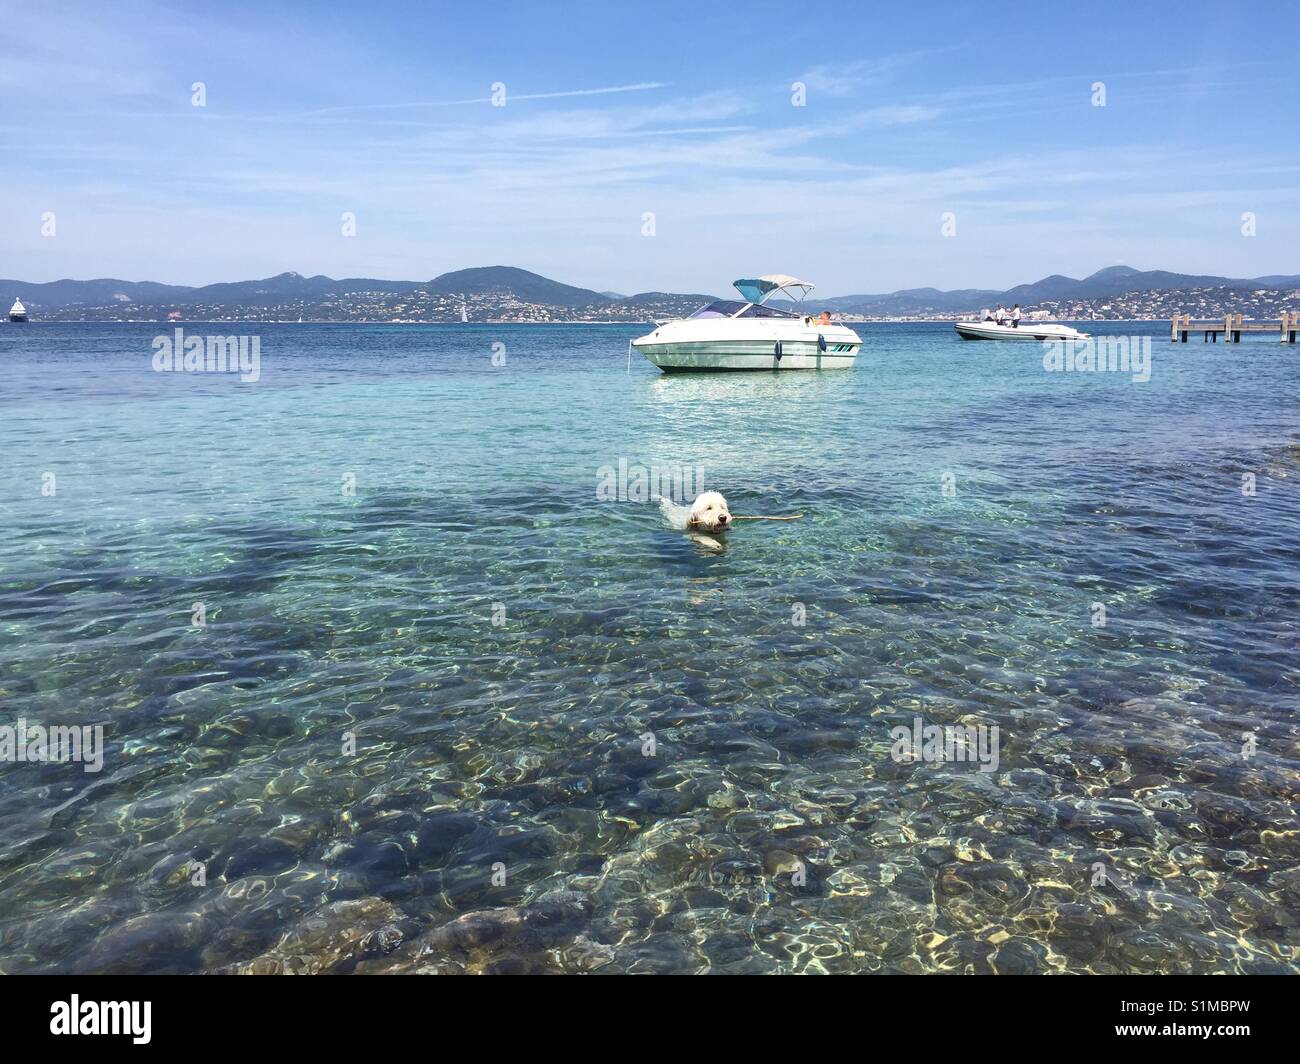 Bucht in Saint Tropez Côte D'Azur mit Meer und Himmel, weisser Hund schwimmt vor Motorboot im türkisem Wasser über Riff mit Bergen im Hintergrund Stock Photo